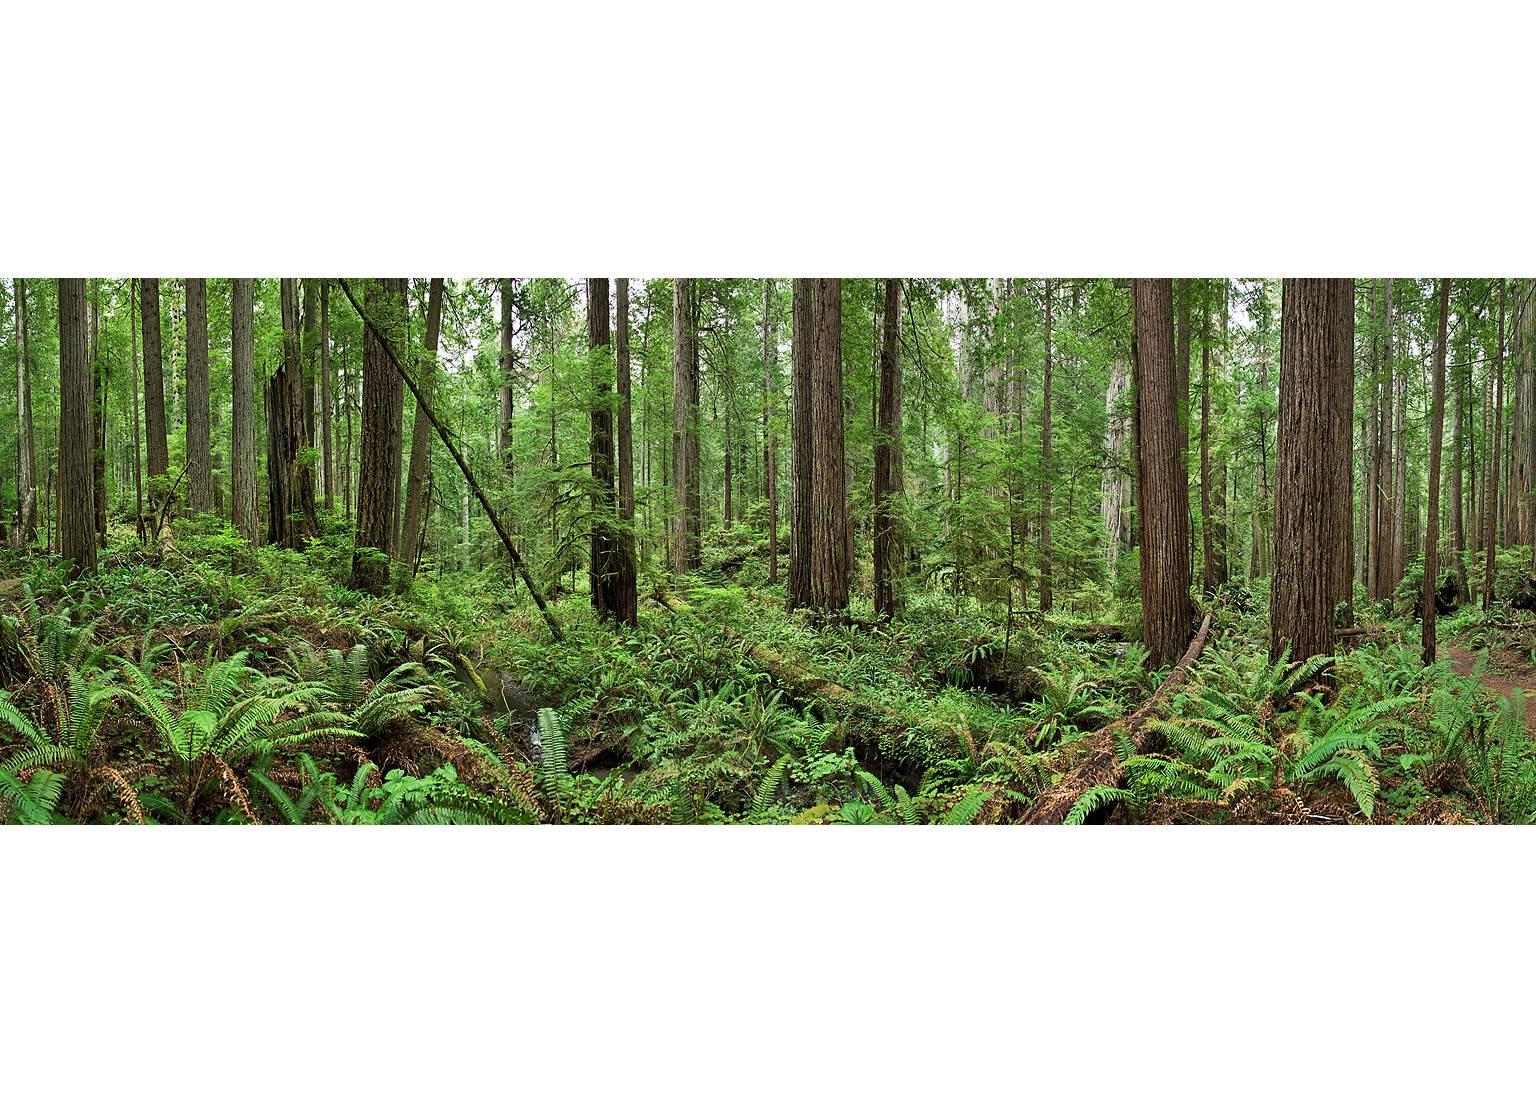 Landscape Print Erik Pawassar - Bois rouges - panorama grand format d'observation de la nature en forêt de bois rouges verts